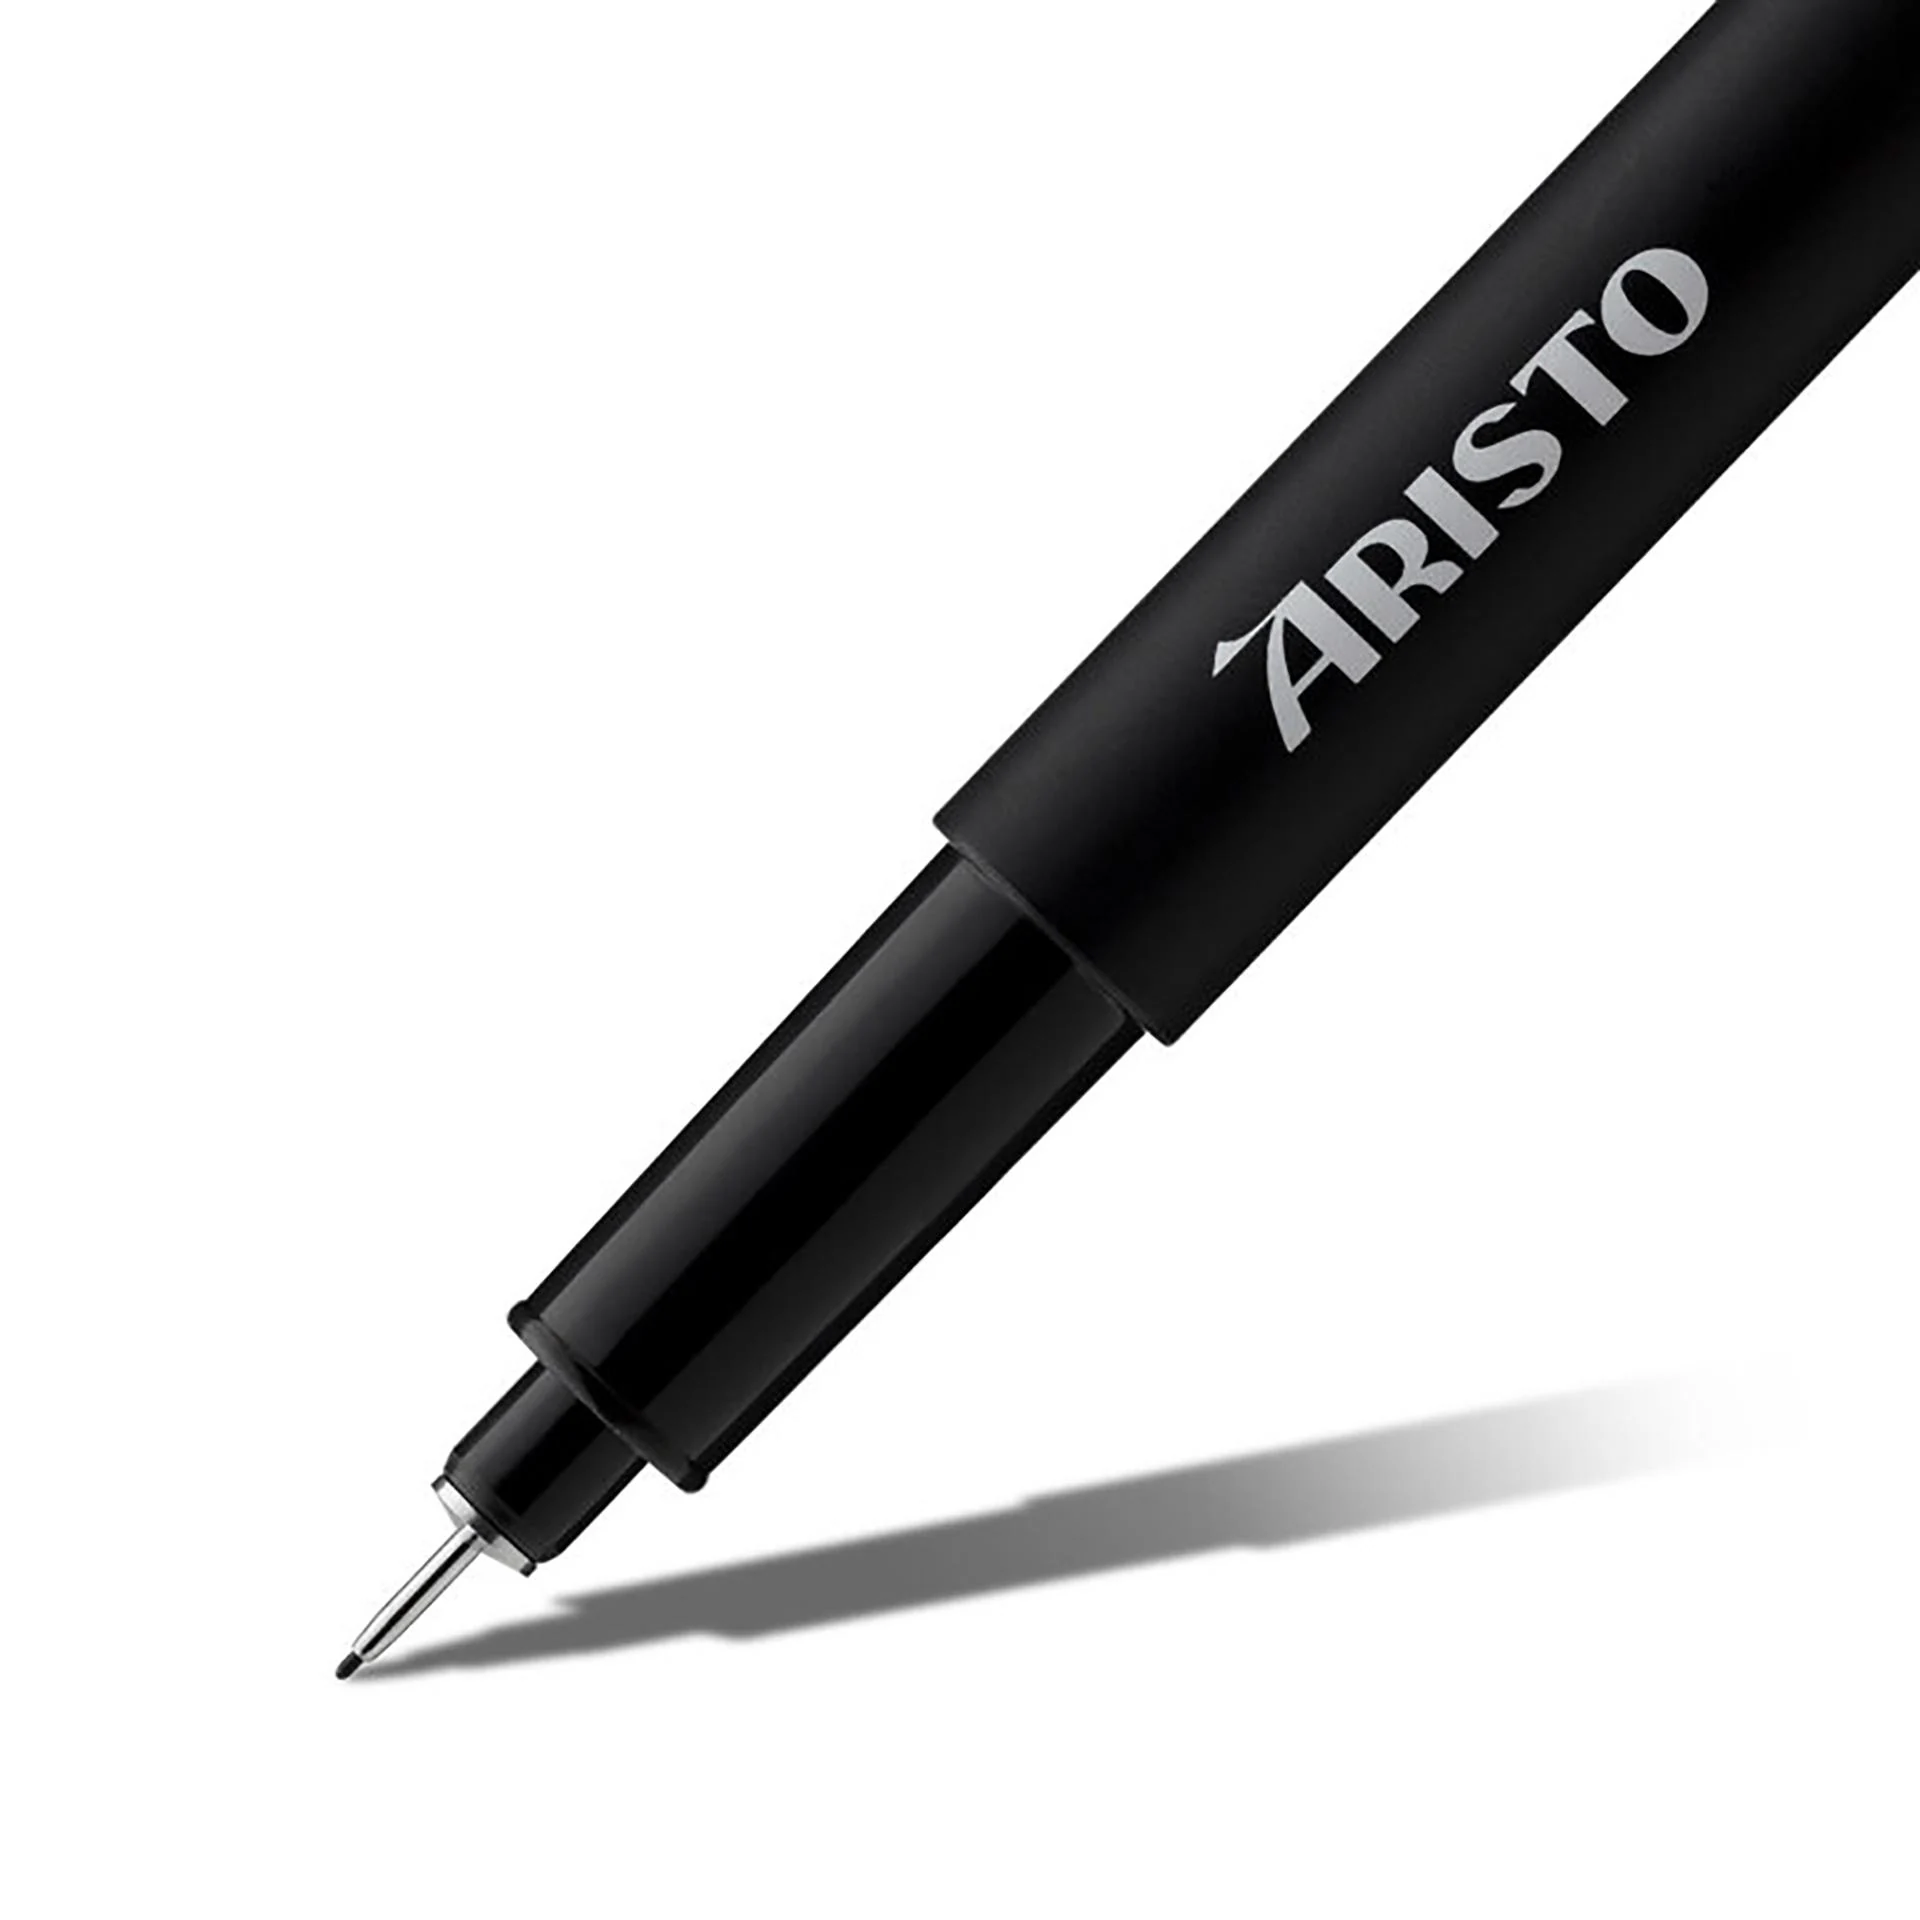 Buy Aristo 0.1mm Pigment Liner 6 Pens, Waterproof Quick Drying